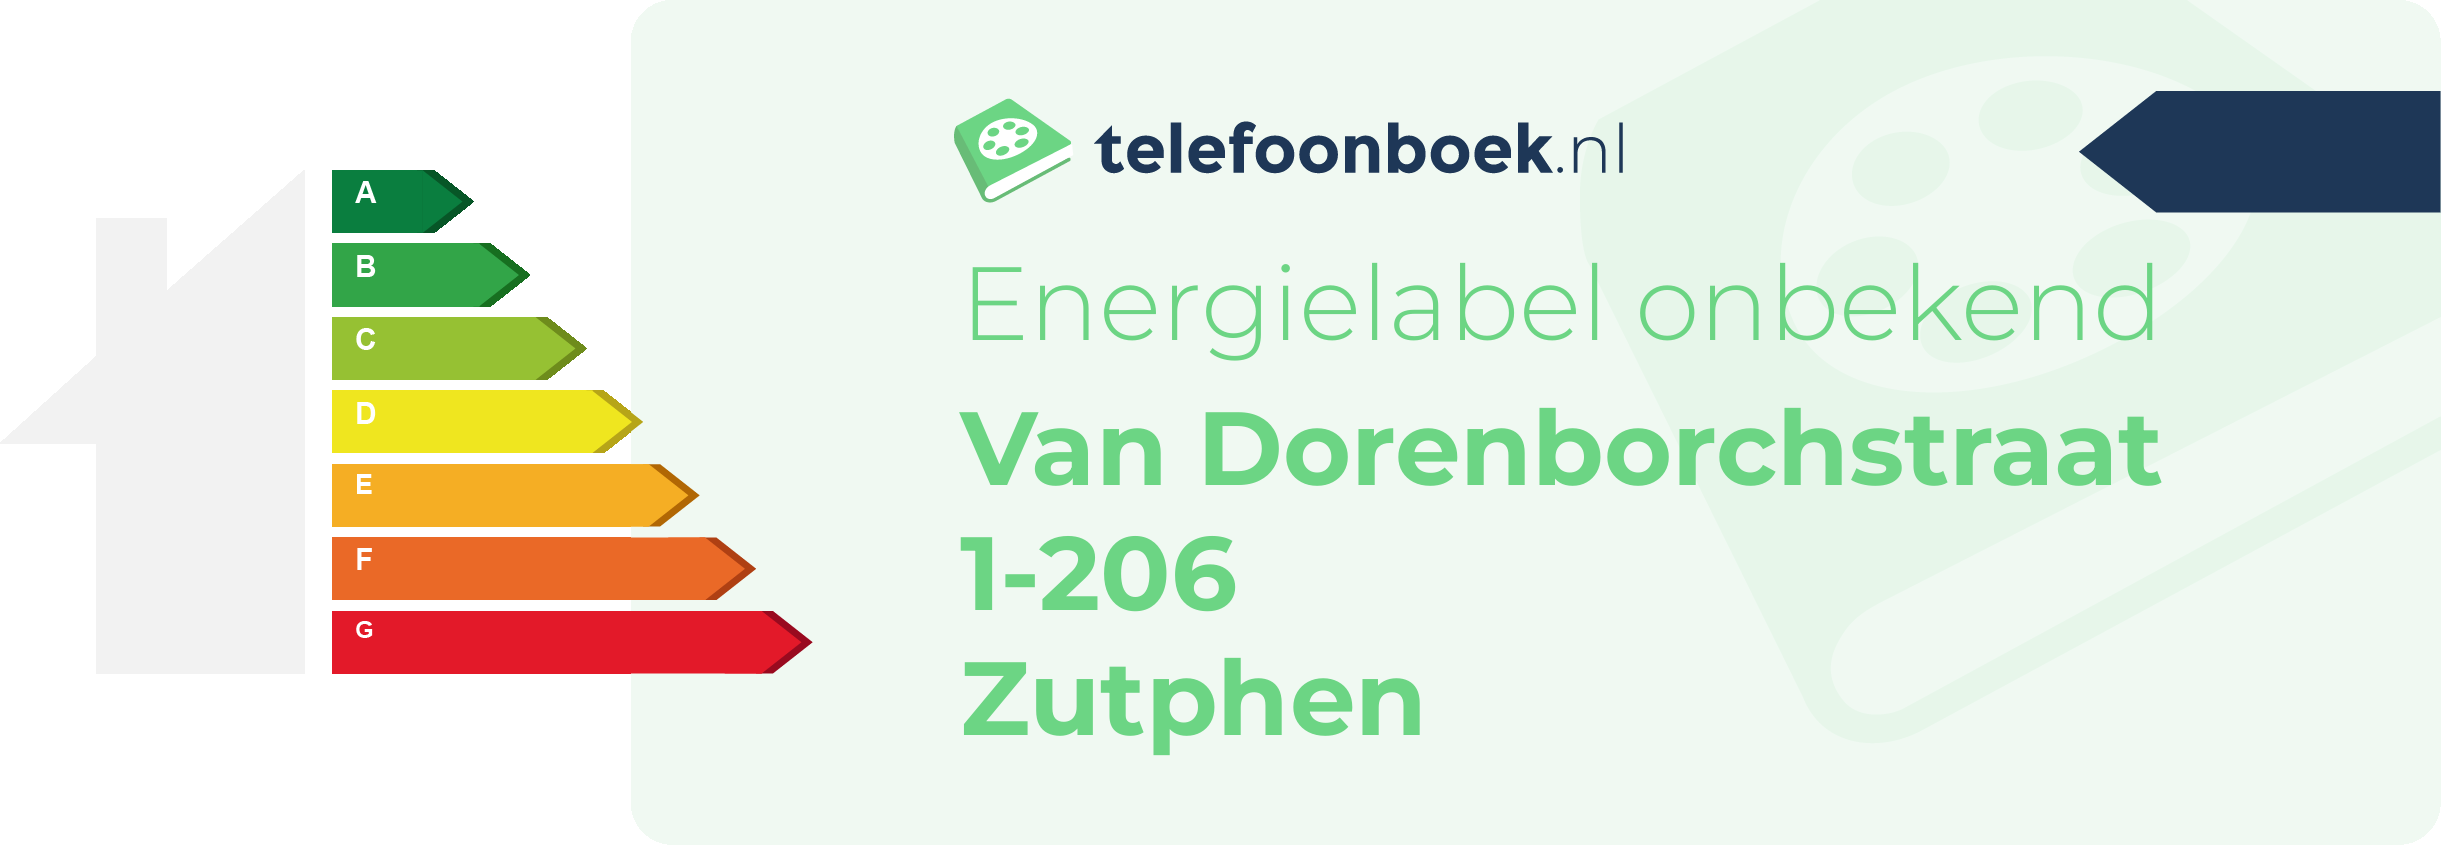 Energielabel Van Dorenborchstraat 1-206 Zutphen